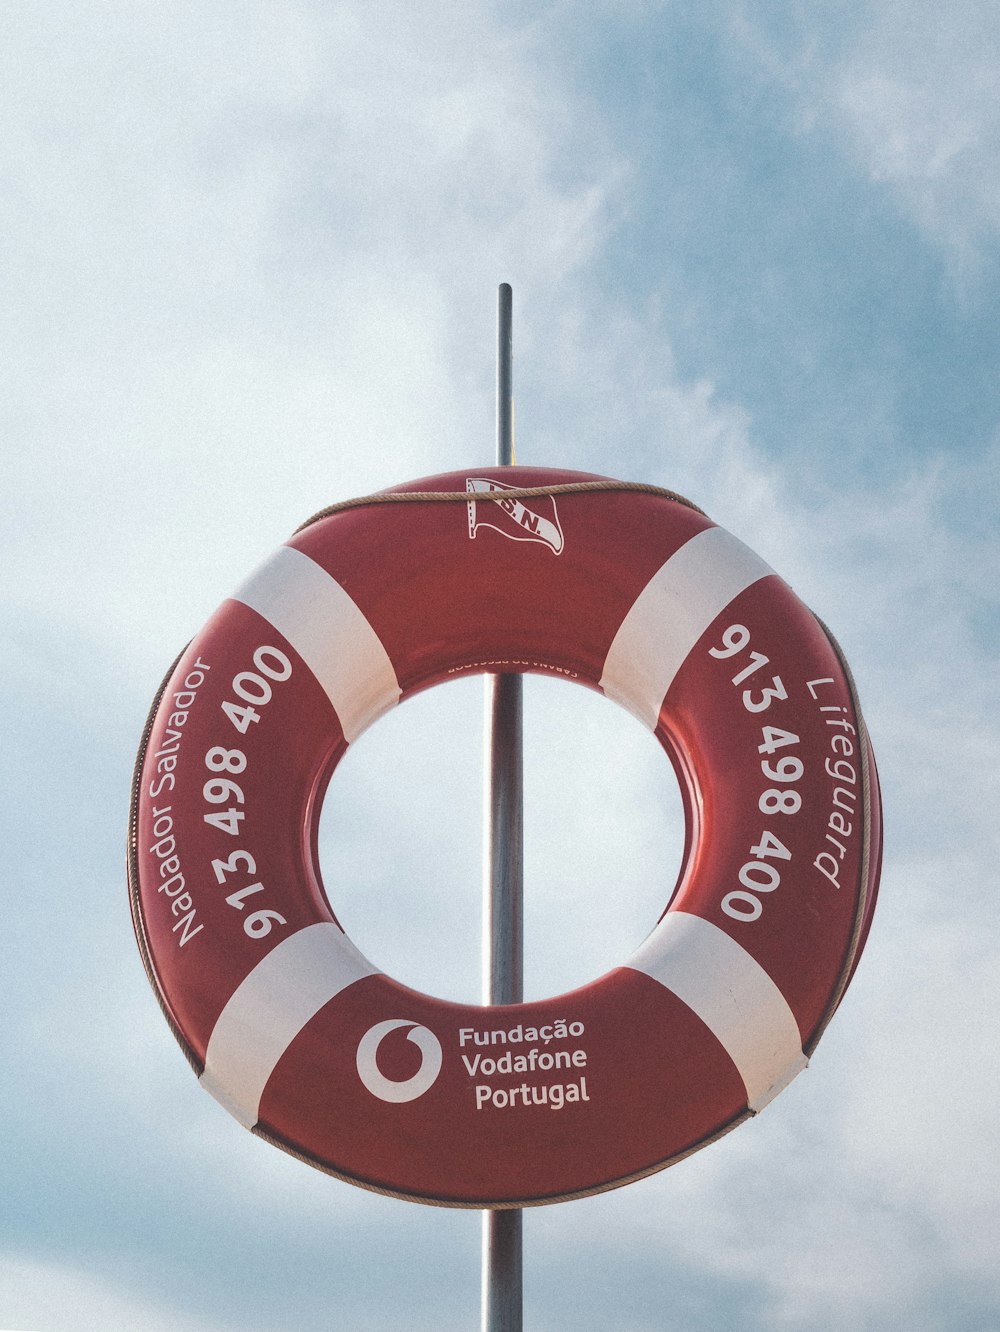 foto de flotador hinchable Vodafone rojo y blanco